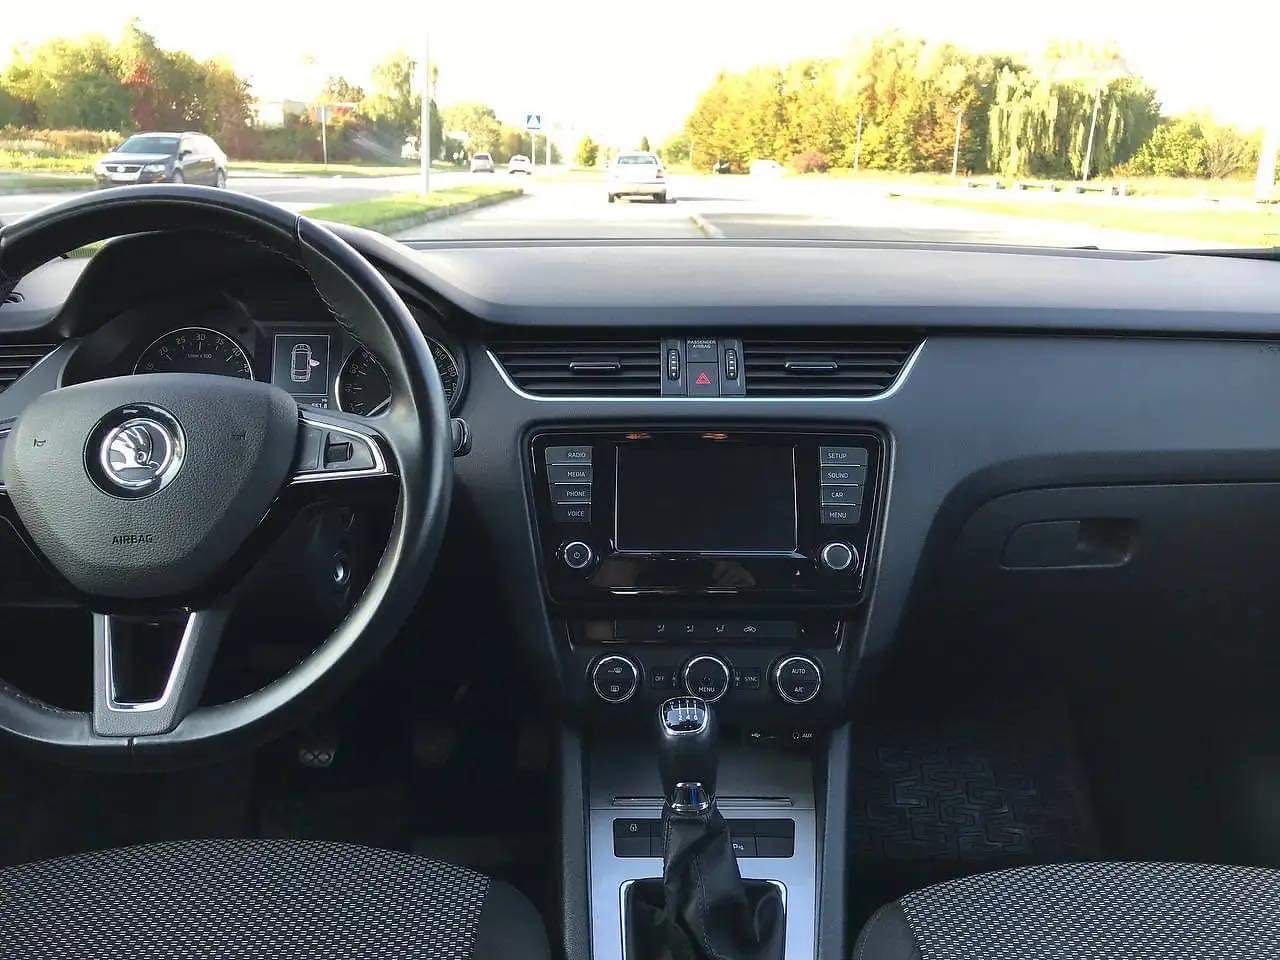 Skoda Octavia 2016 A7 2.0 дизель